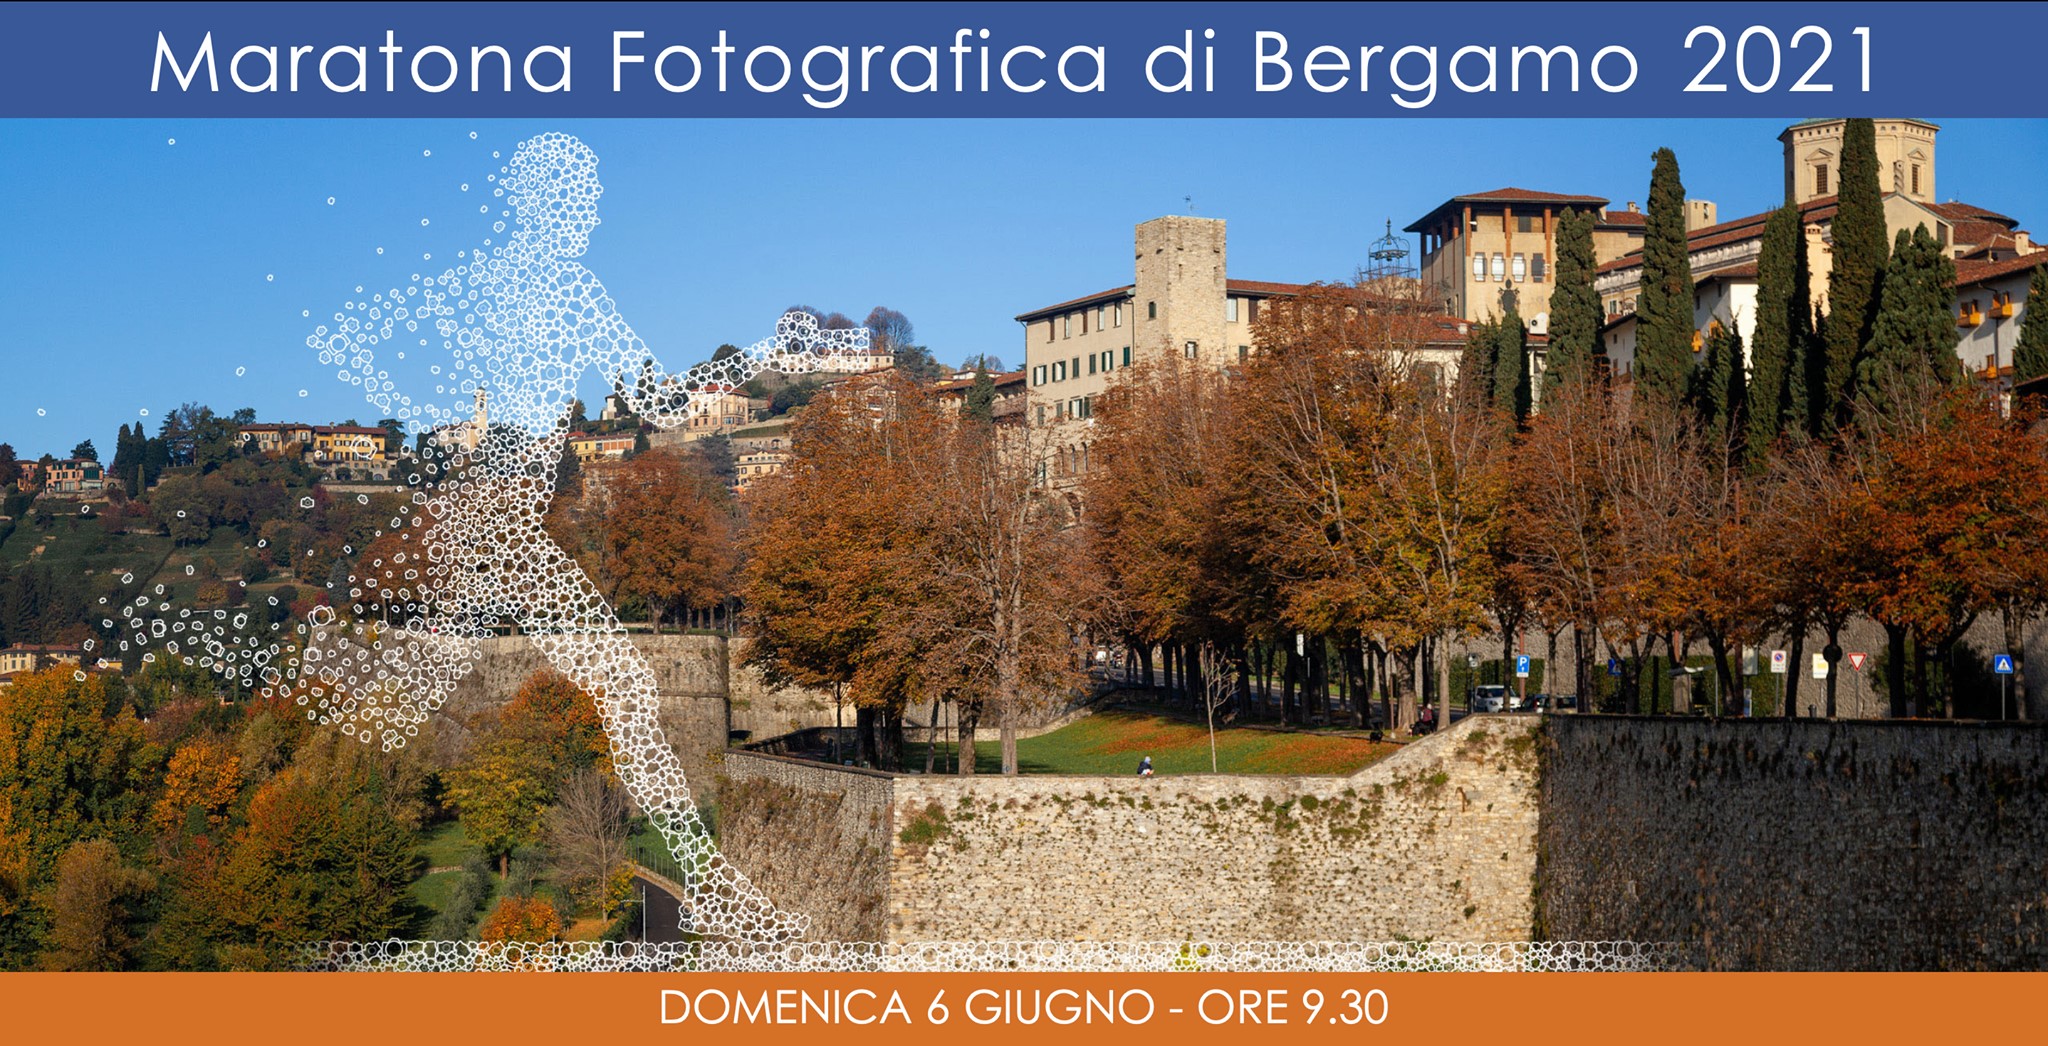 Maratona fotografica, appuntamento a Bergamo il 6 giugno